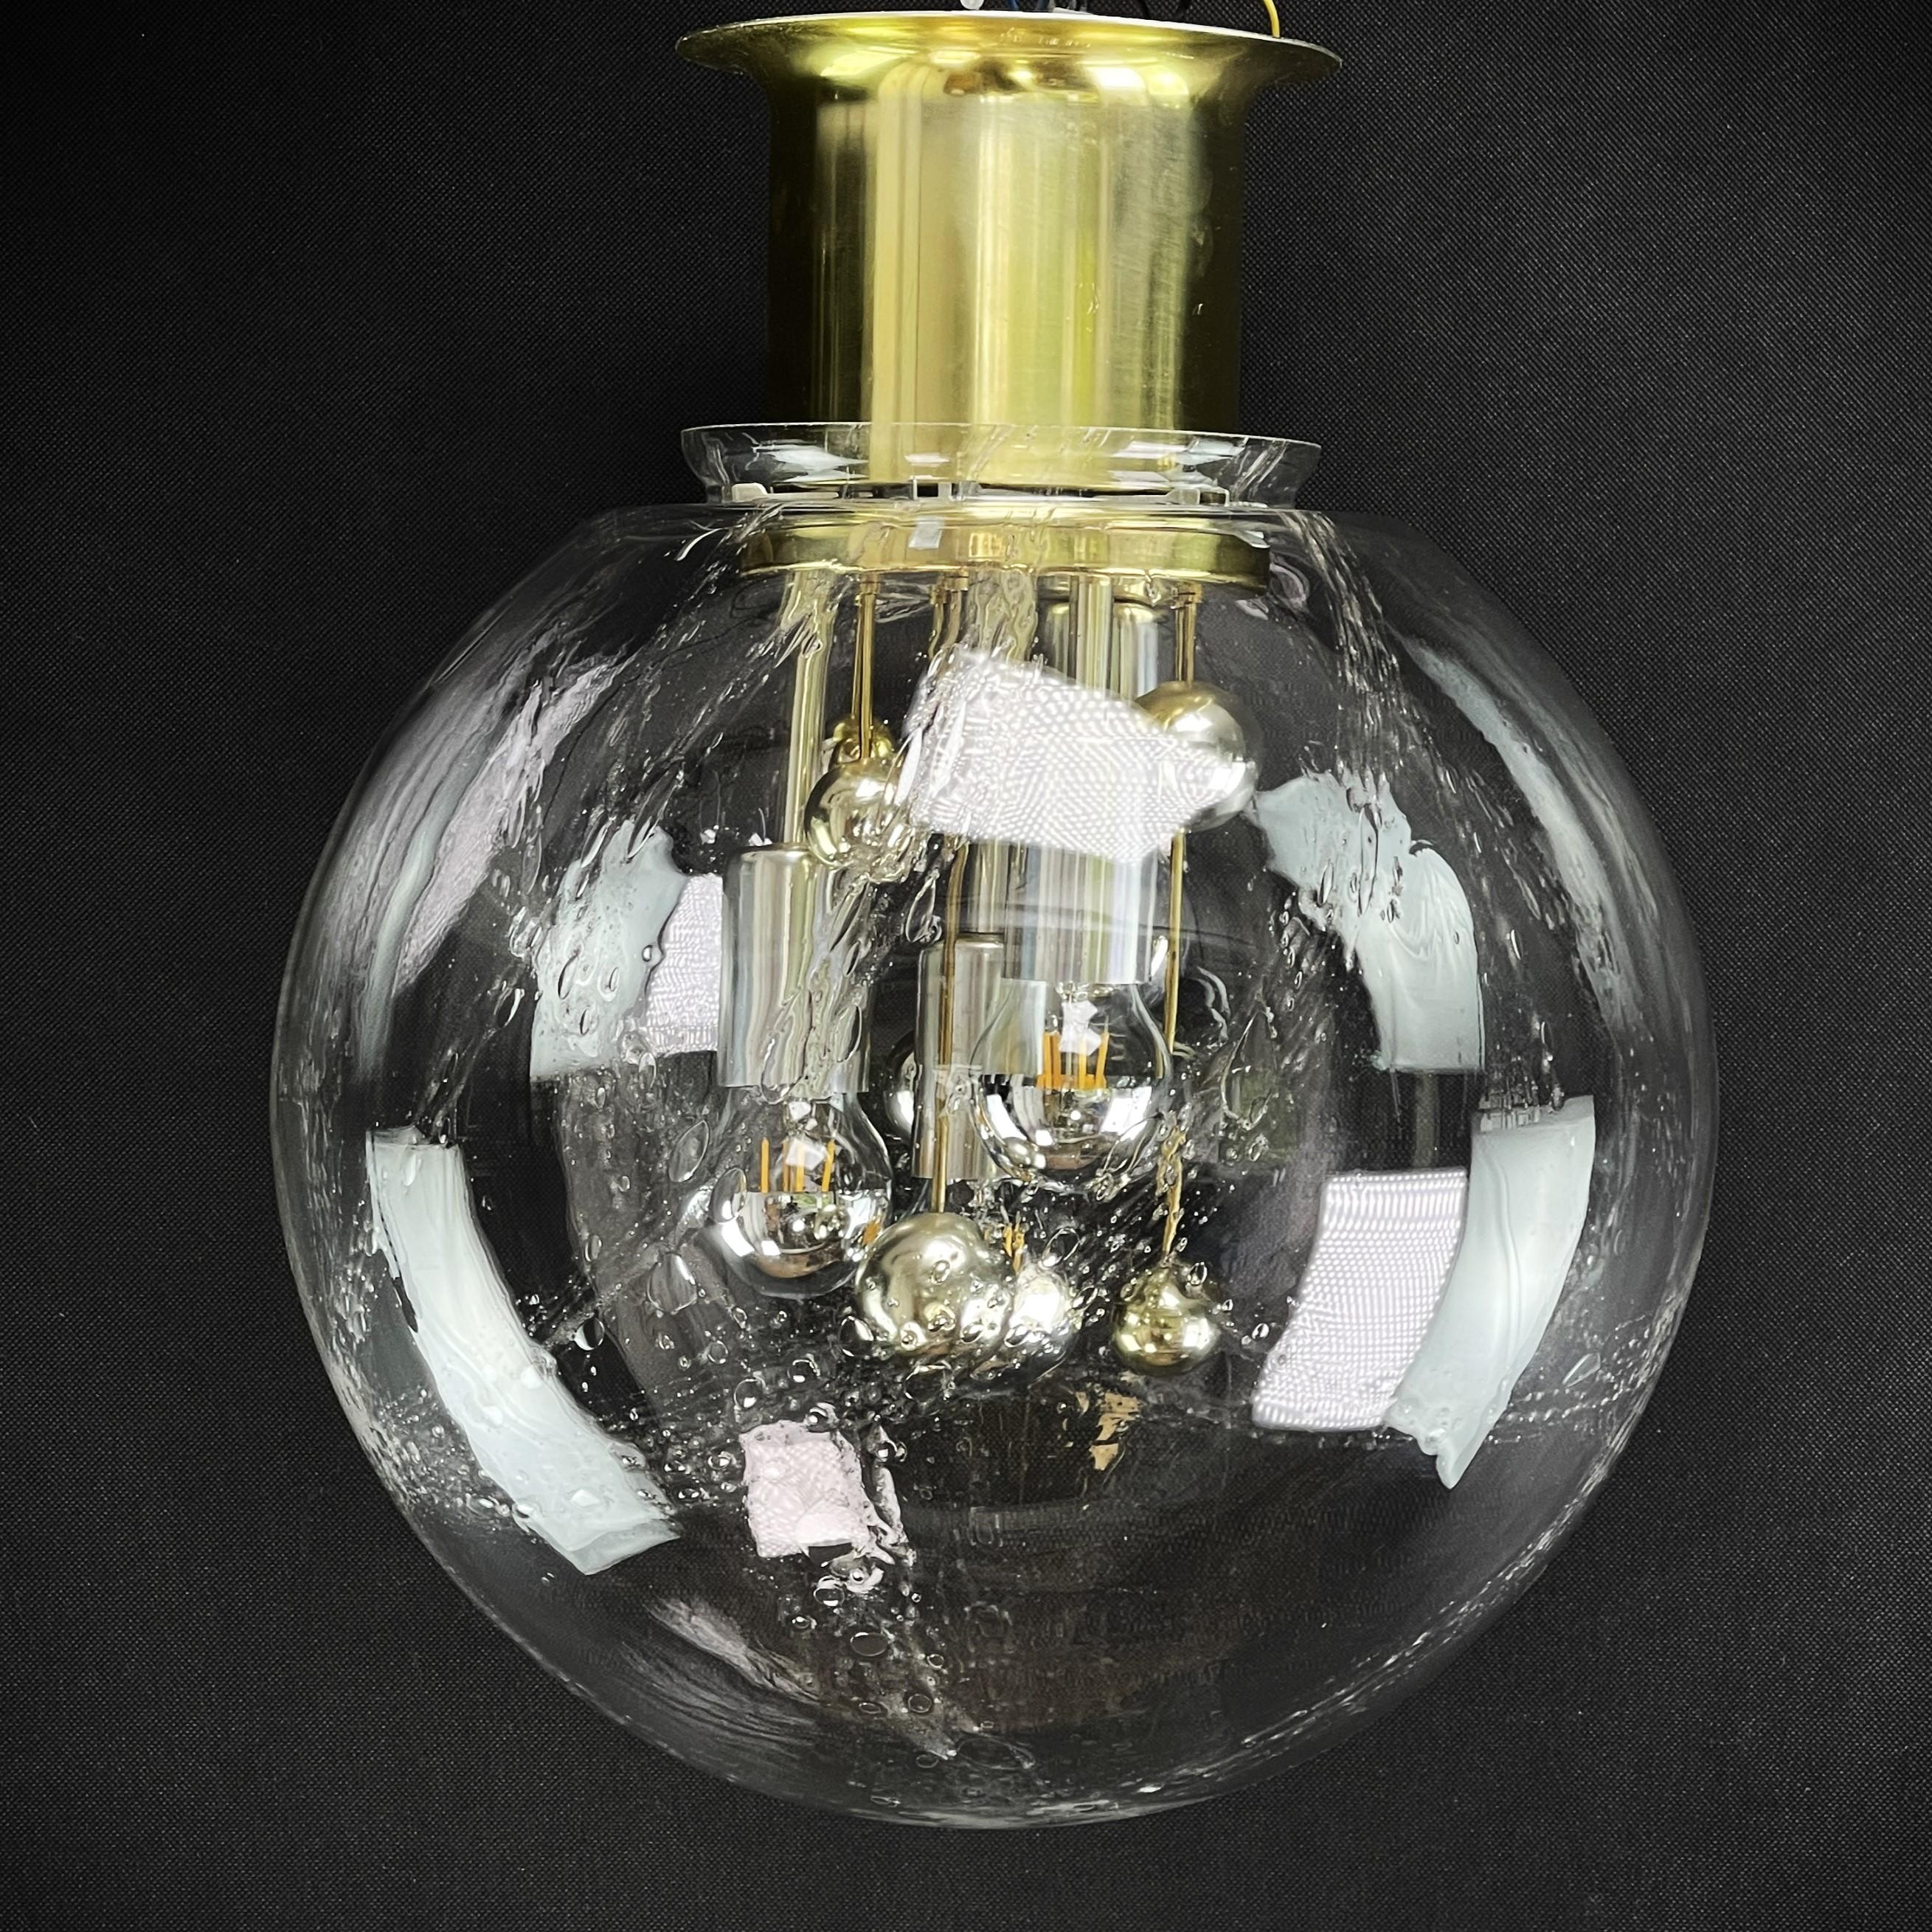 Doria Deckenleuchte mit großer Glaskugel

Die Designerlampe ist ein echter Klassiker aus den 70er Jahren. Die Lounge-Lampe von Doria ist ein Original und spendet ein angenehmes Licht. 

Die Leuchte ist aus Aluminium und Messing gefertigt und hat